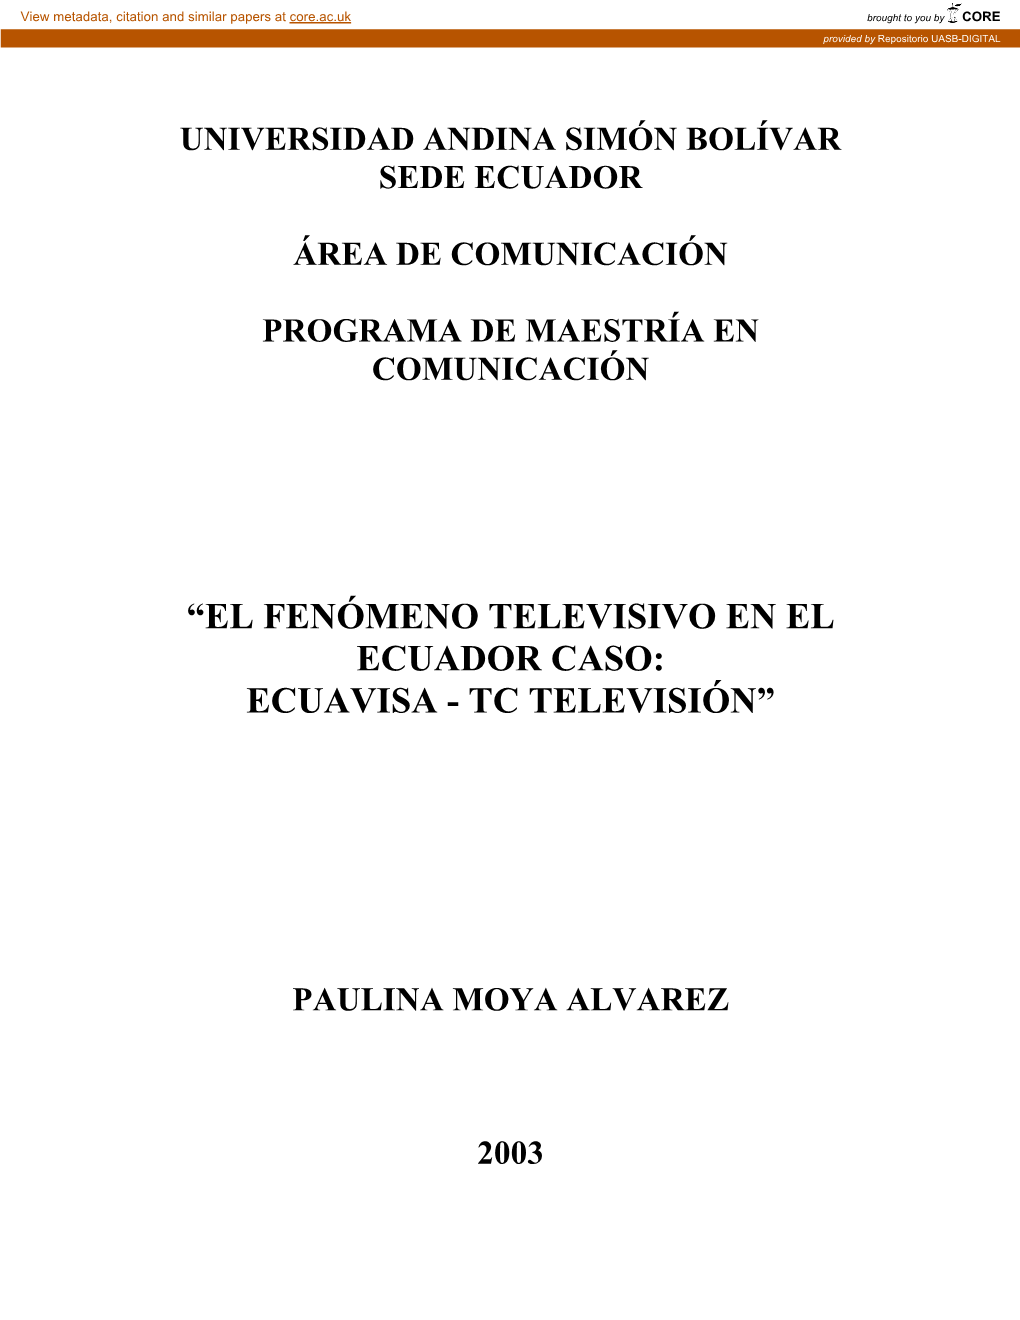 El Fenómeno Televisivo En El Ecuador Caso: Ecuavisa - Tc Televisión”